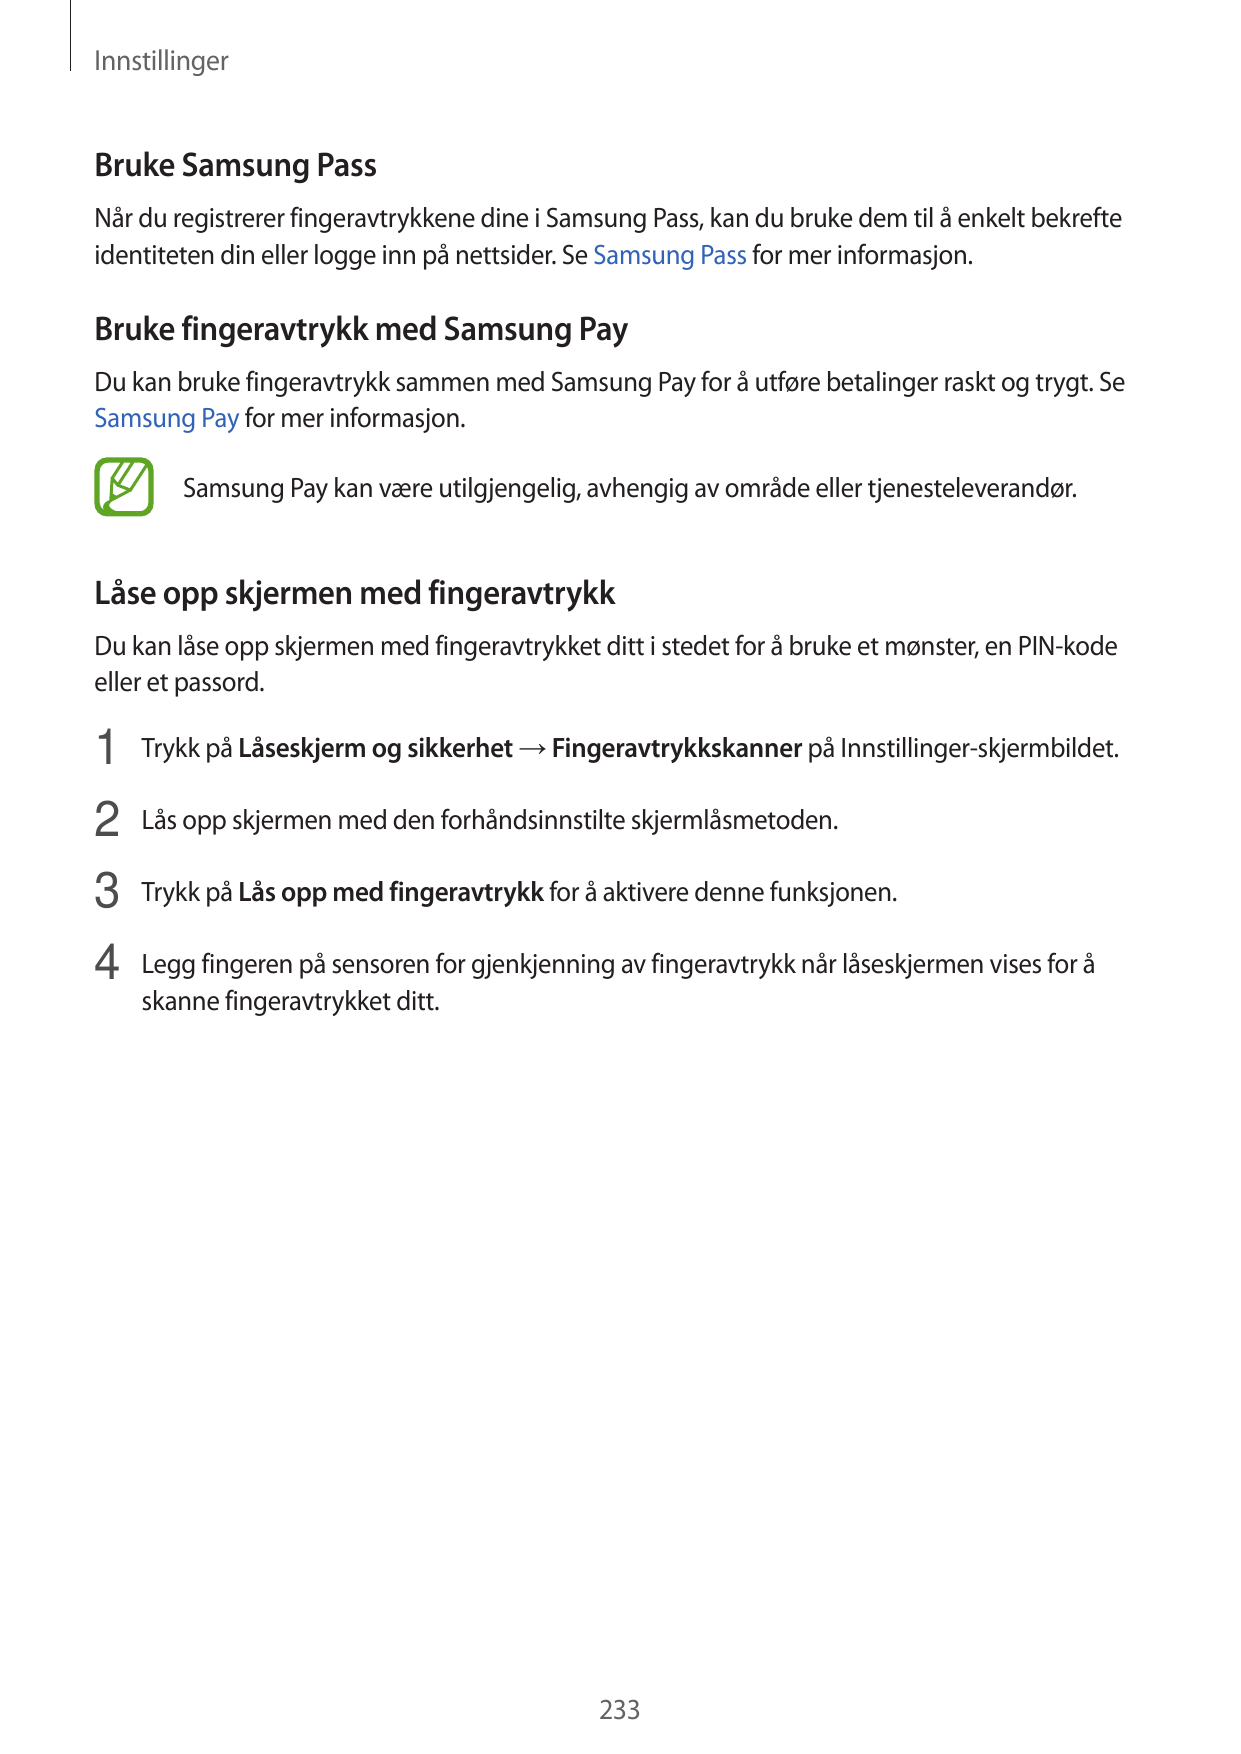 InnstillingerBruke Samsung PassNår du registrerer fingeravtrykkene dine i Samsung Pass, kan du bruke dem til å enkelt bekrefteid